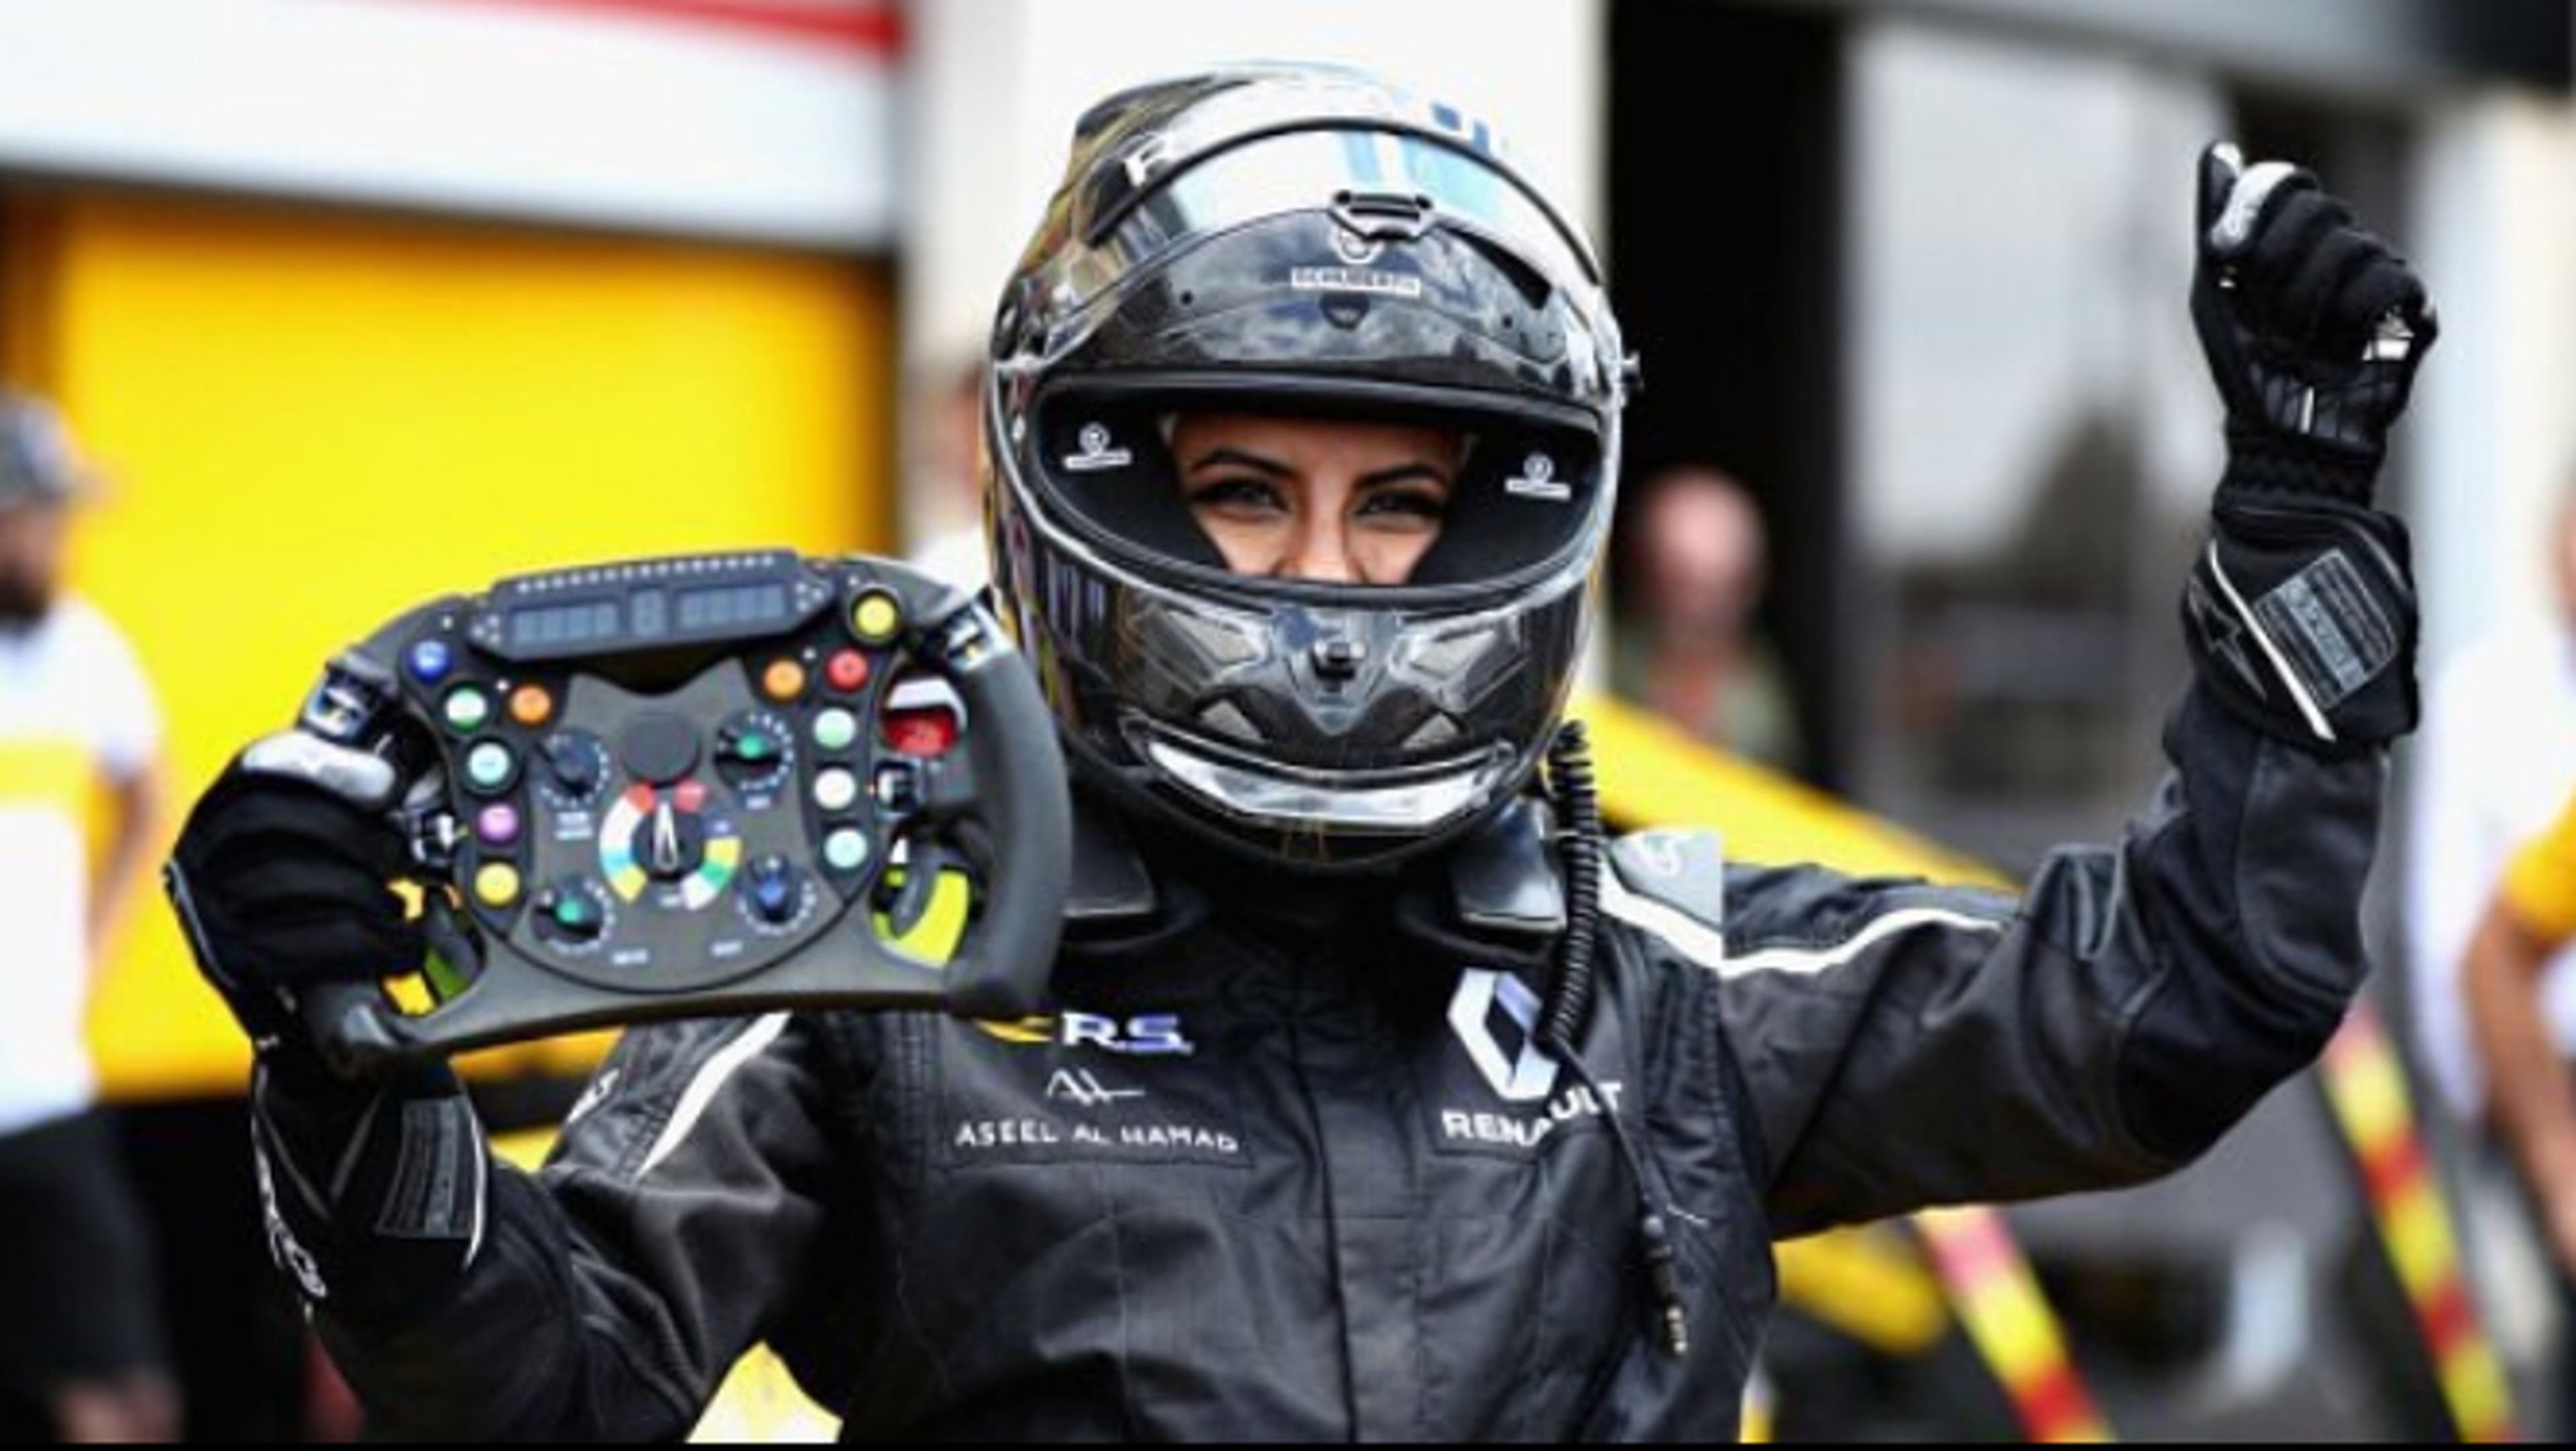 Una mujer saudí en un F1 en el GP Francia F1